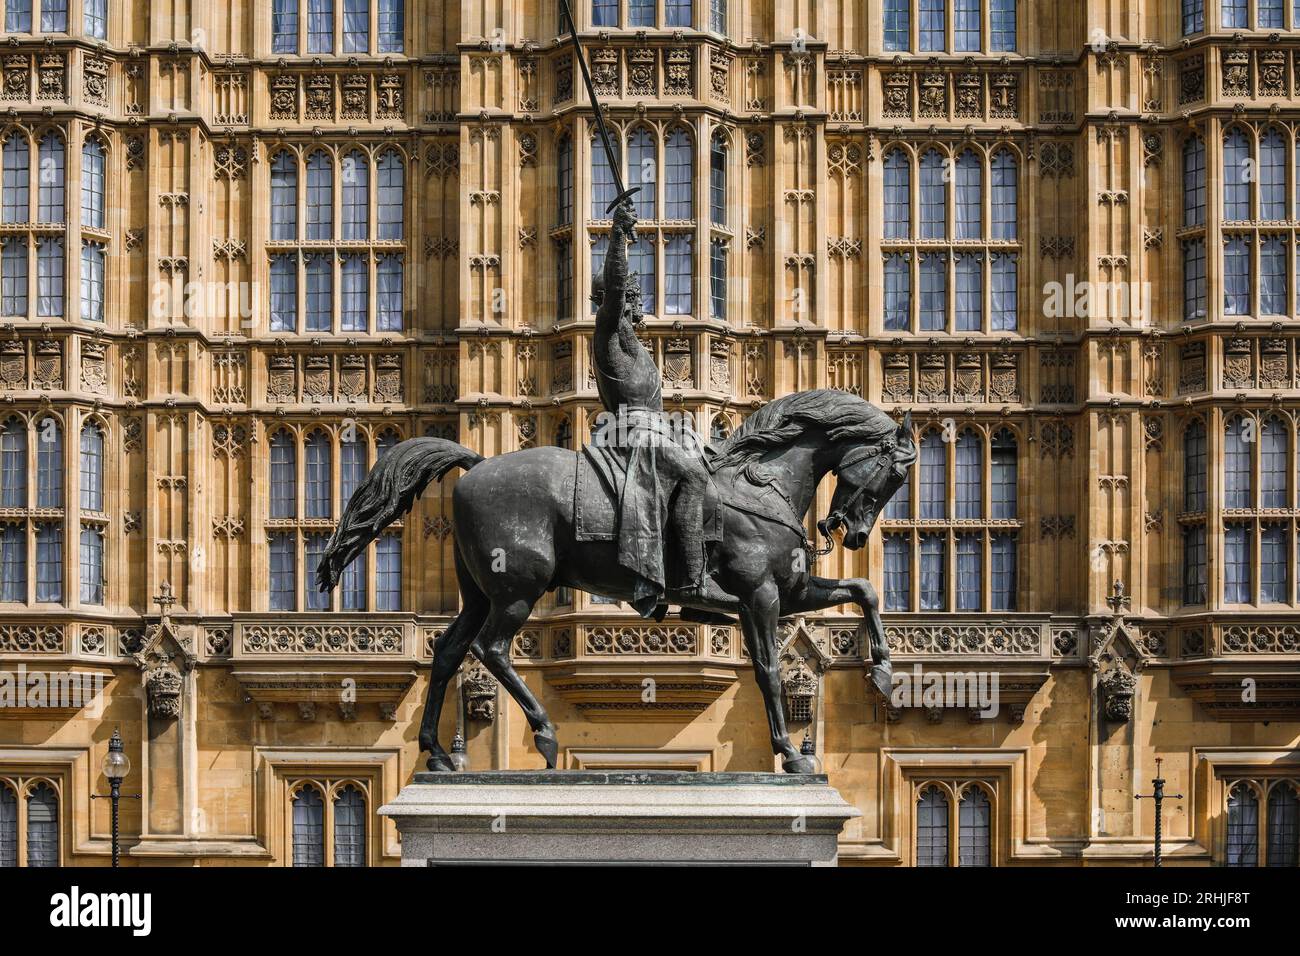 Estatua ecuestre del Rey Ricardo I (Richard Coeur de Lion), fuera de las Casas del Parlamento, Palacio de Westminster, Londres, Inglaterra Foto de stock